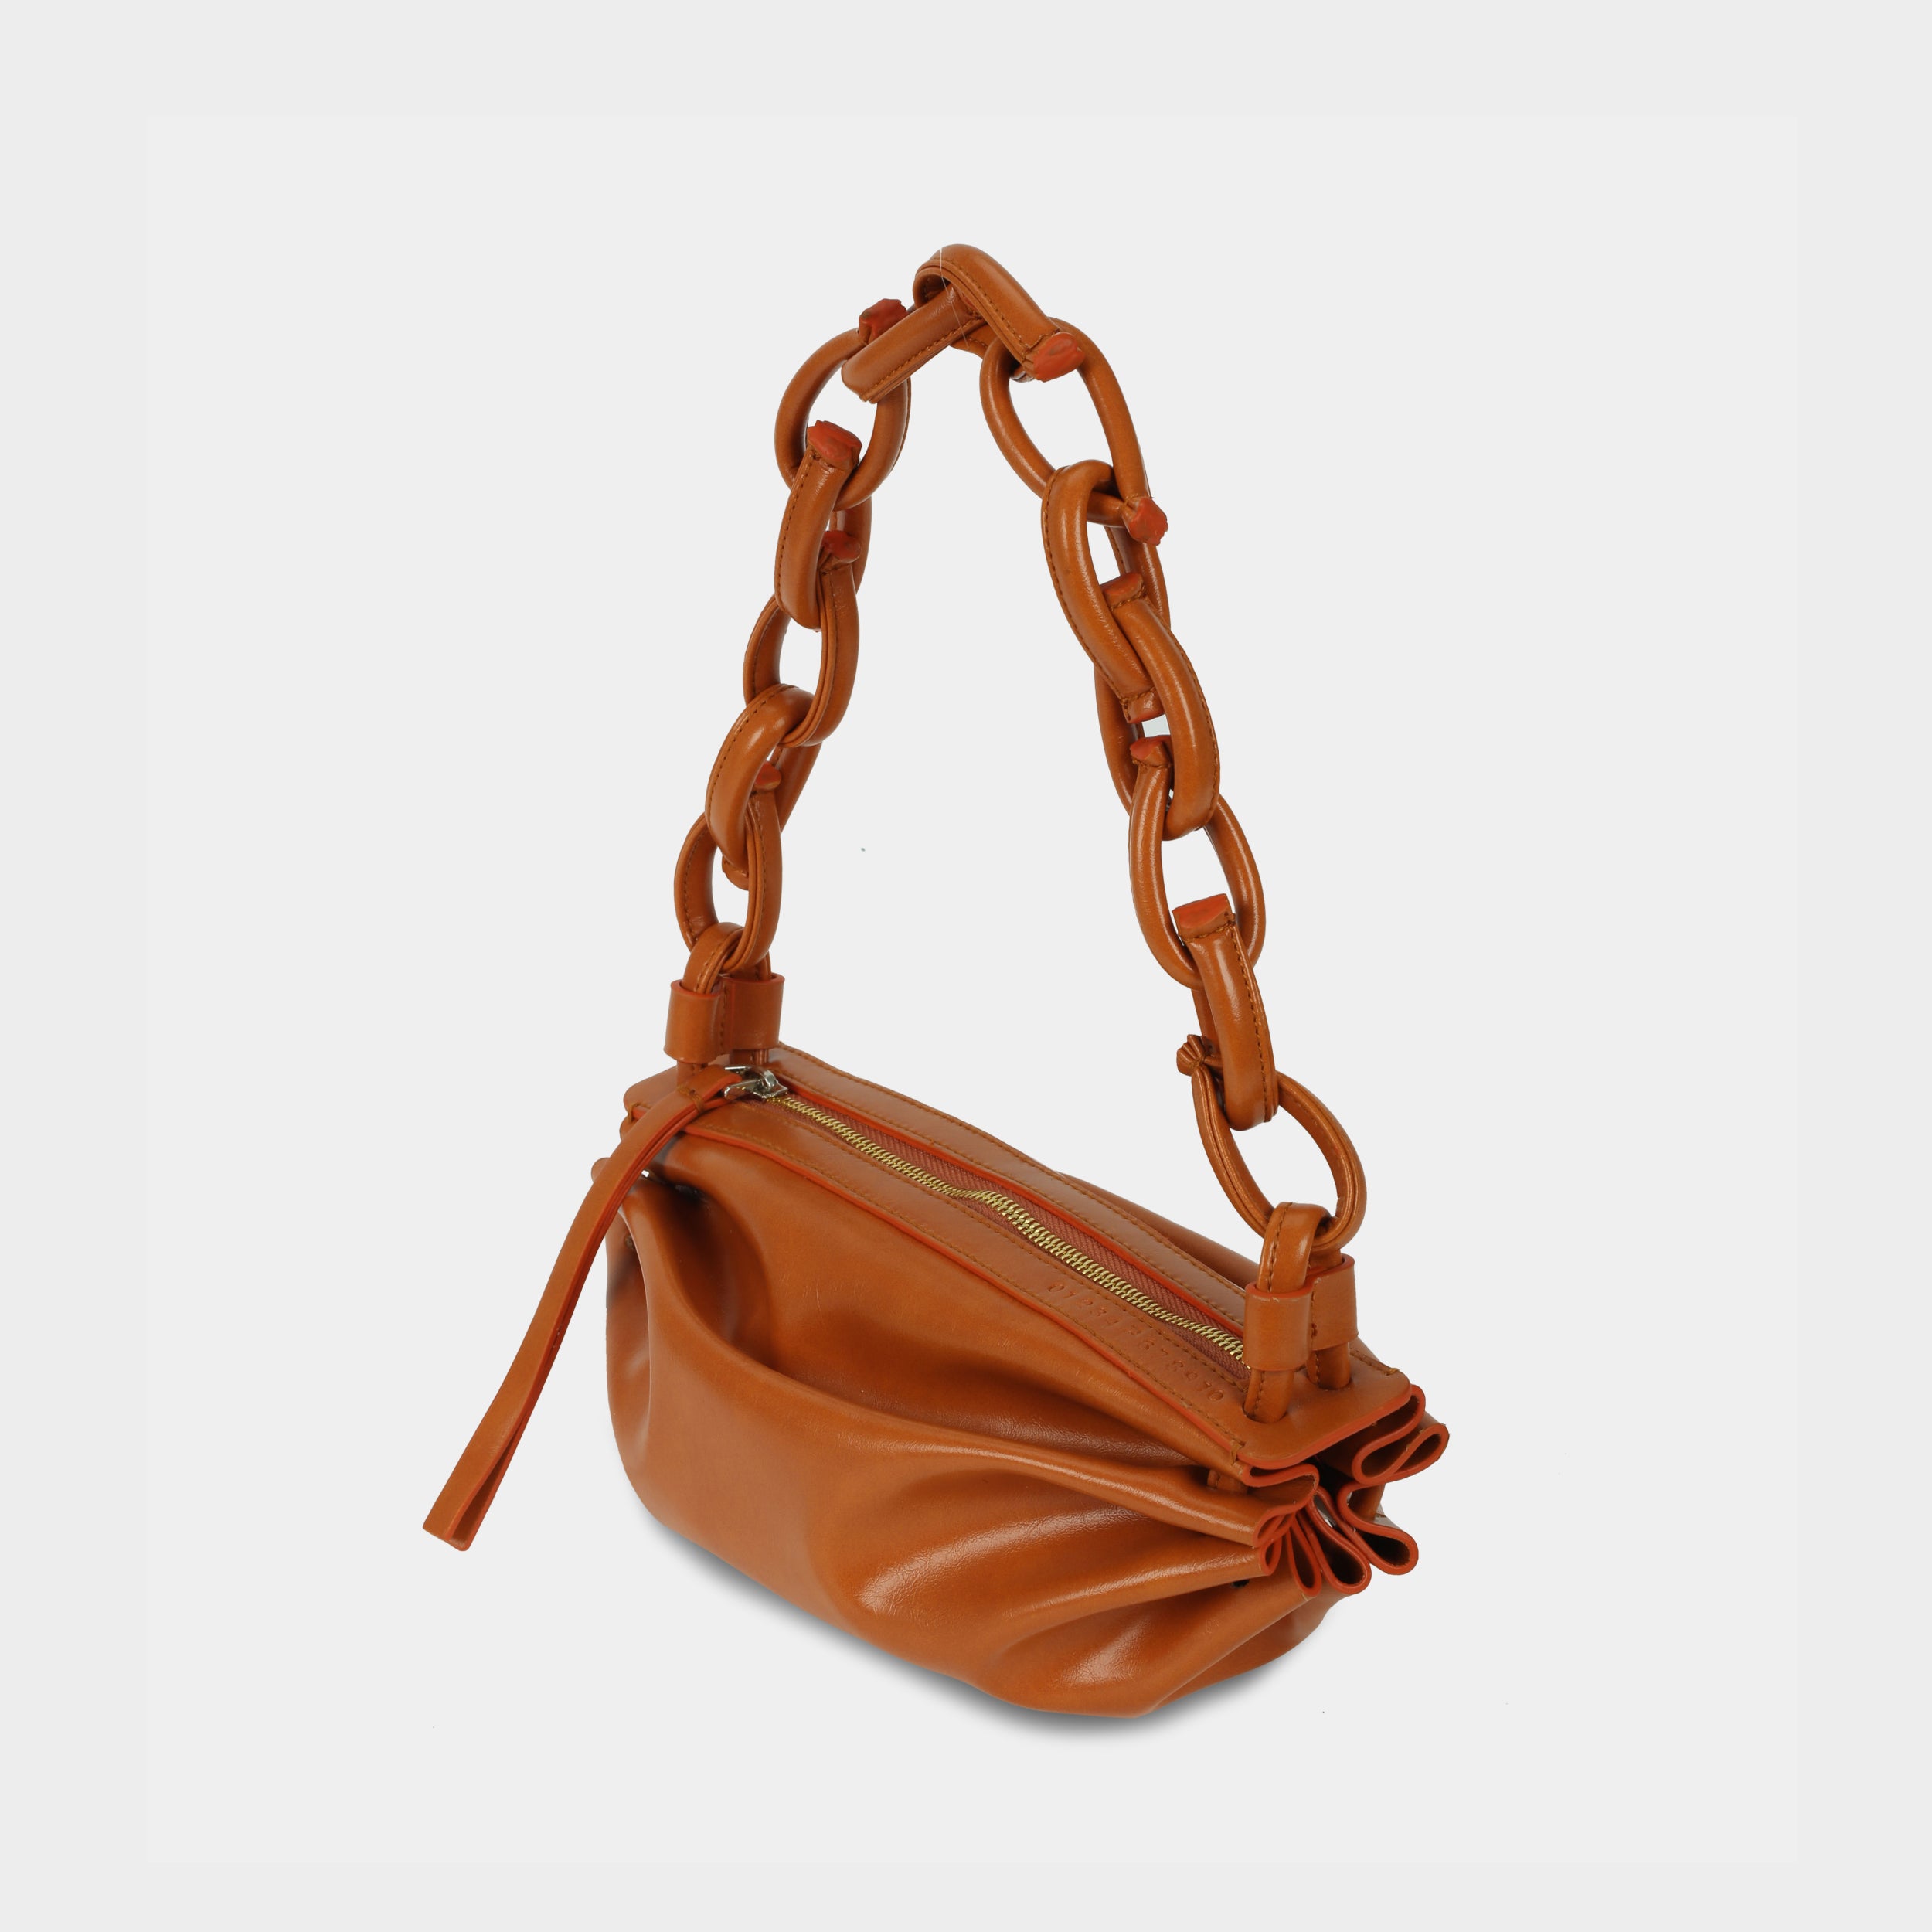 BOAT bag small size (S) orange color